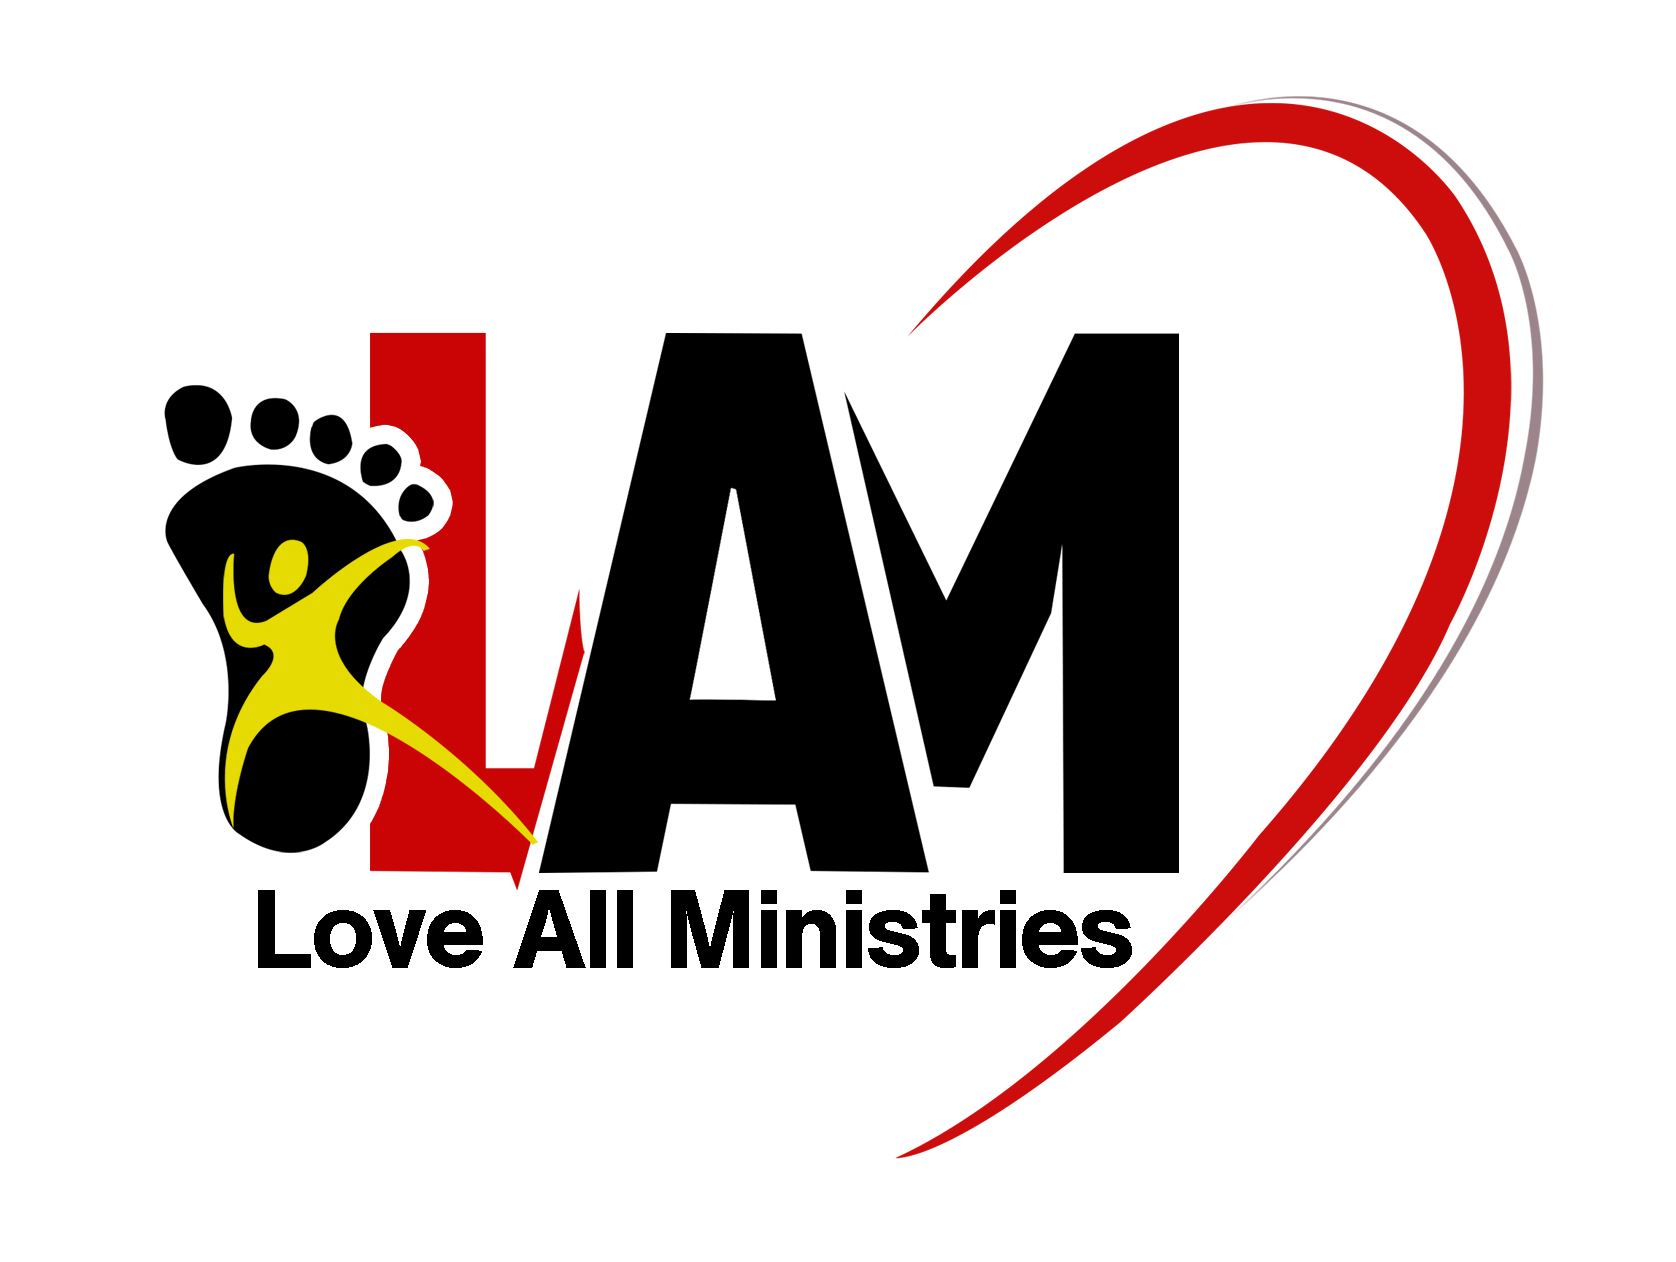 Love All Ministries logo